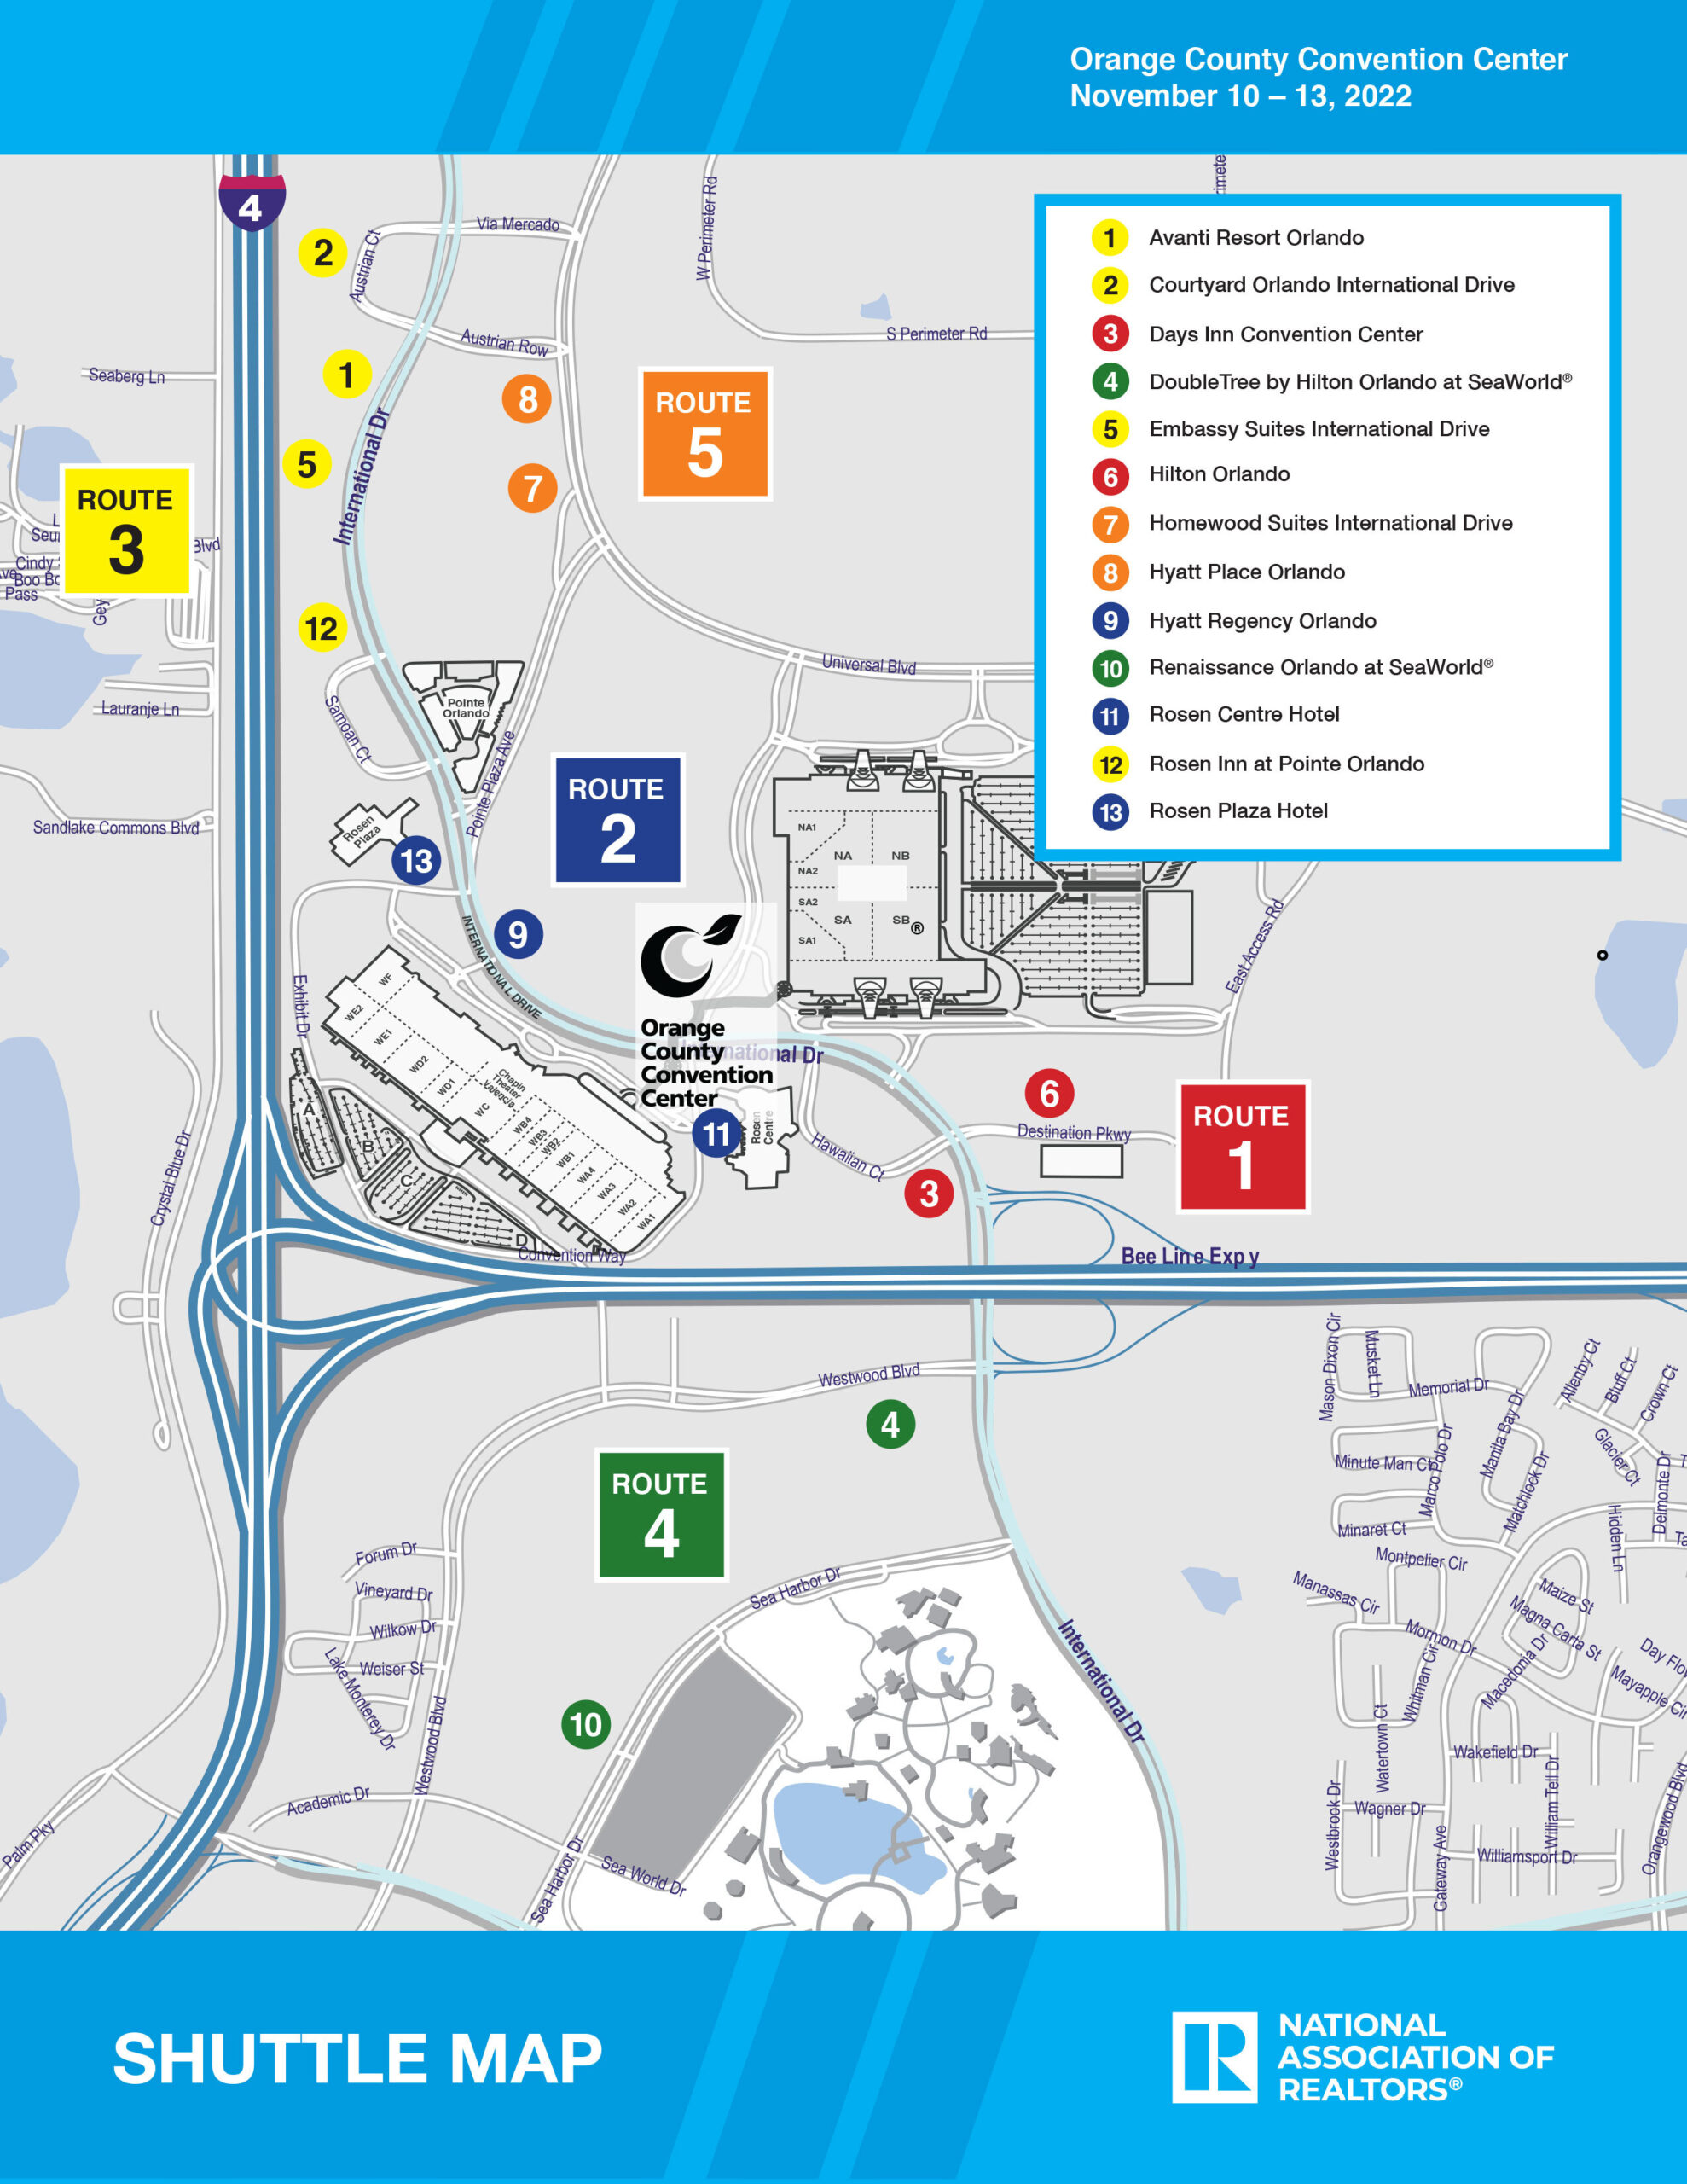 Hotel Shuttle Map, Orlando, NAR NXT 2022